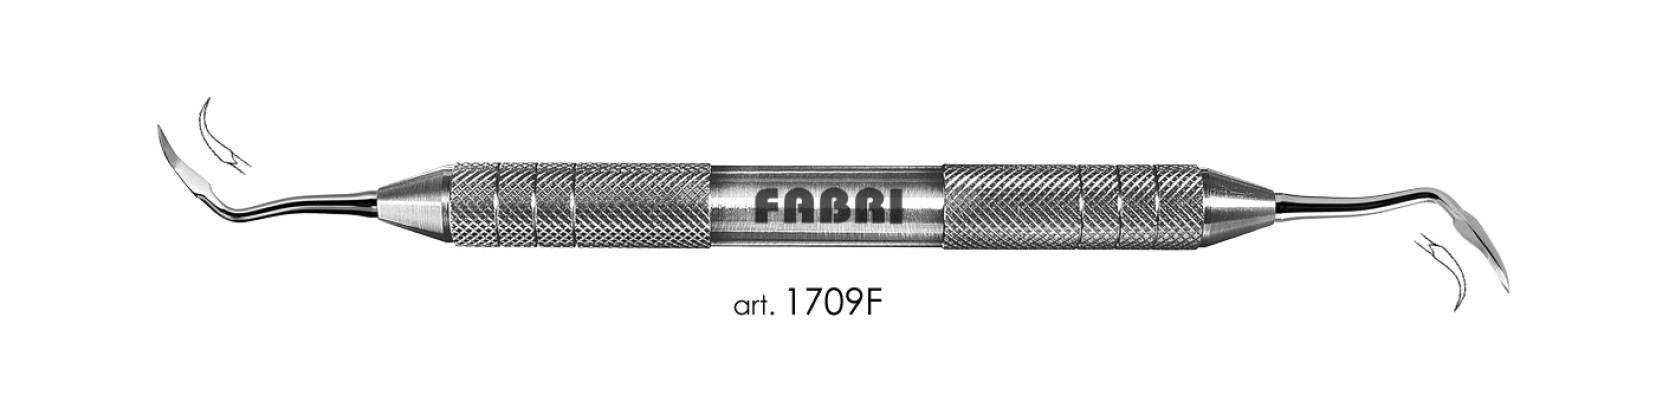 ФАБРИ Fabri  - Инструмент для снятия зубных отложений (арт. 1709 F)